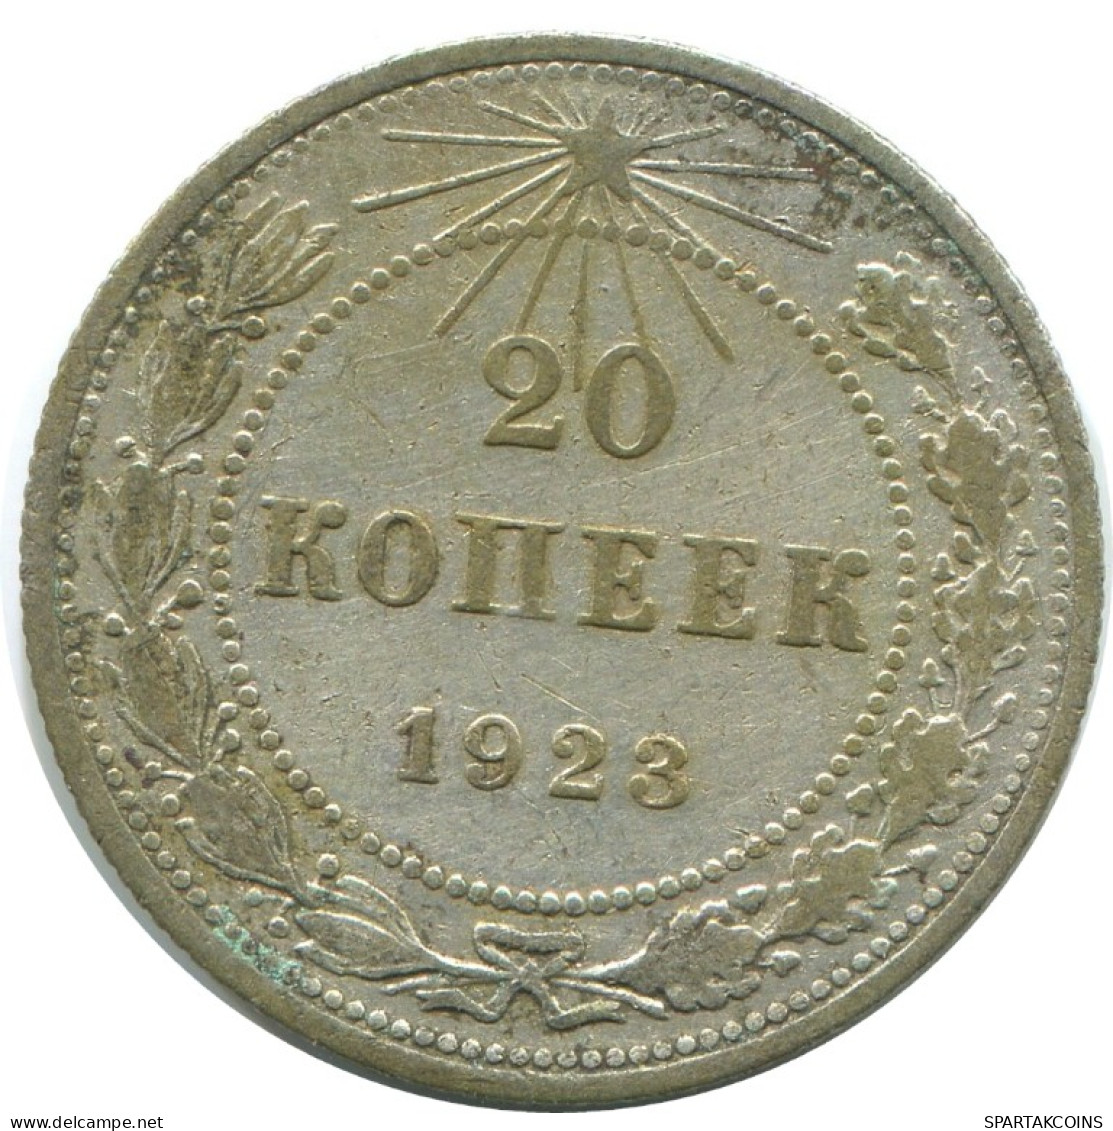 20 KOPEKS 1923 RUSSLAND RUSSIA RSFSR SILBER Münze HIGH GRADE #AF559.4.D.A - Russia